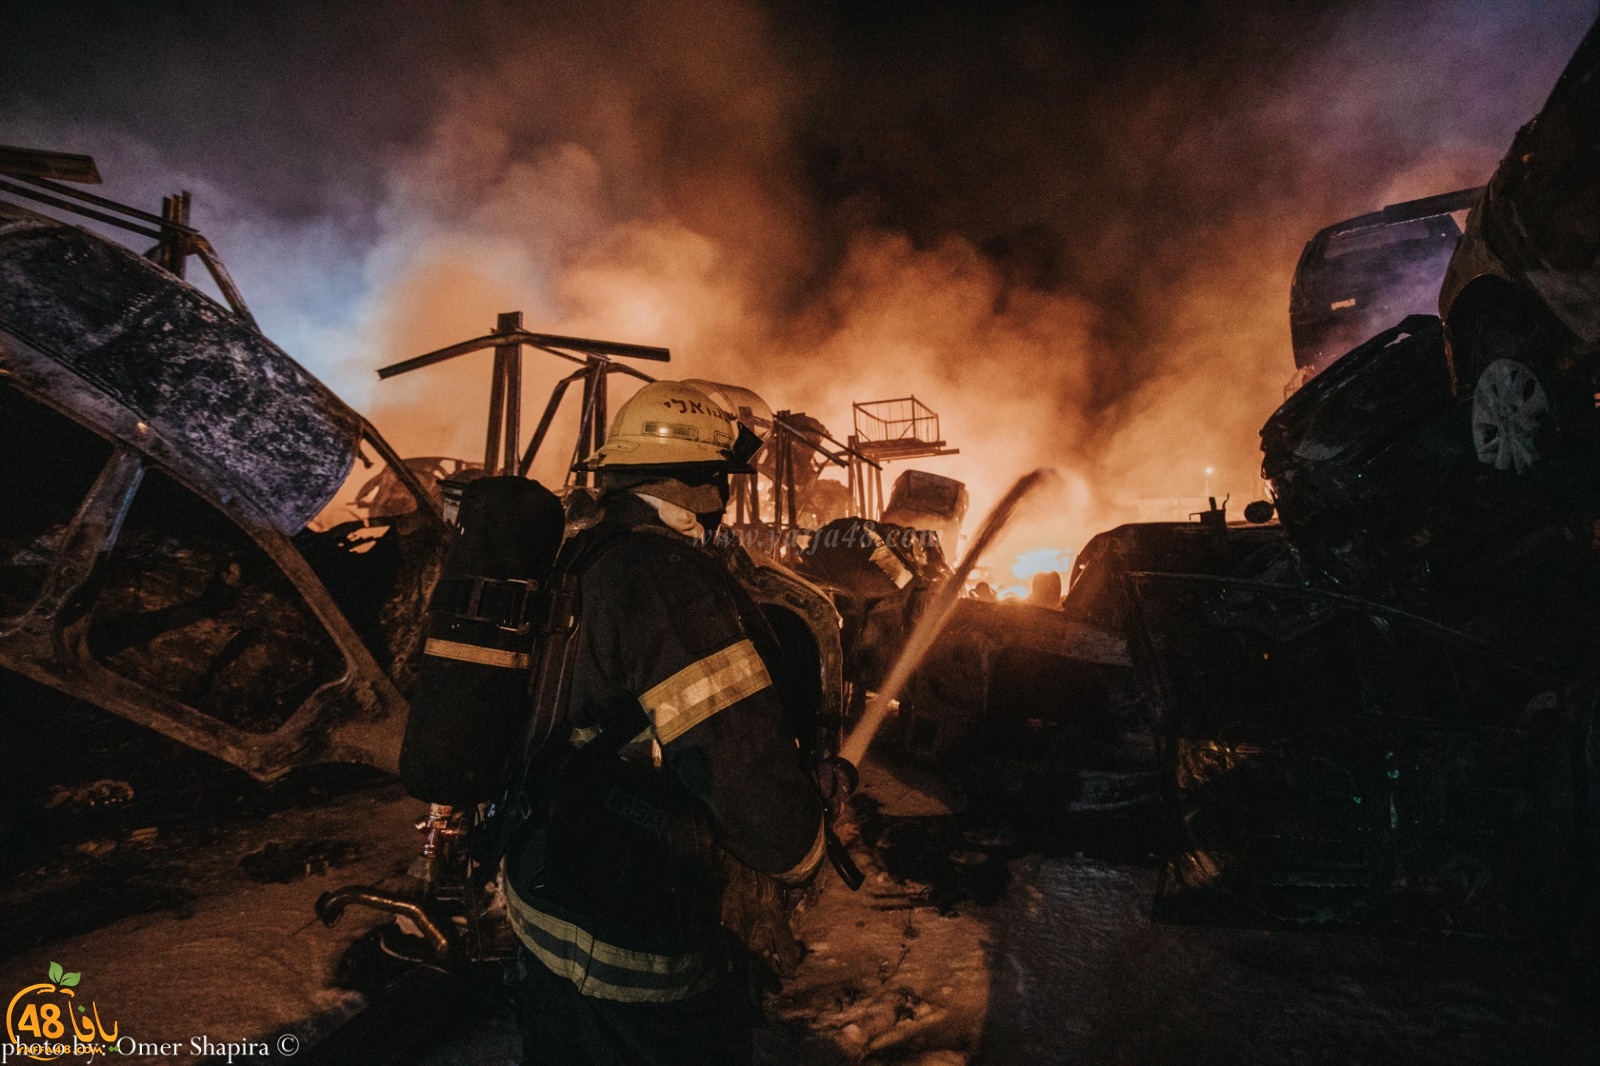  فيديو: مشاهد من الحريق الكبير في اللد بعد نجاح طواقم الاطفائية بالسيطرة عليه